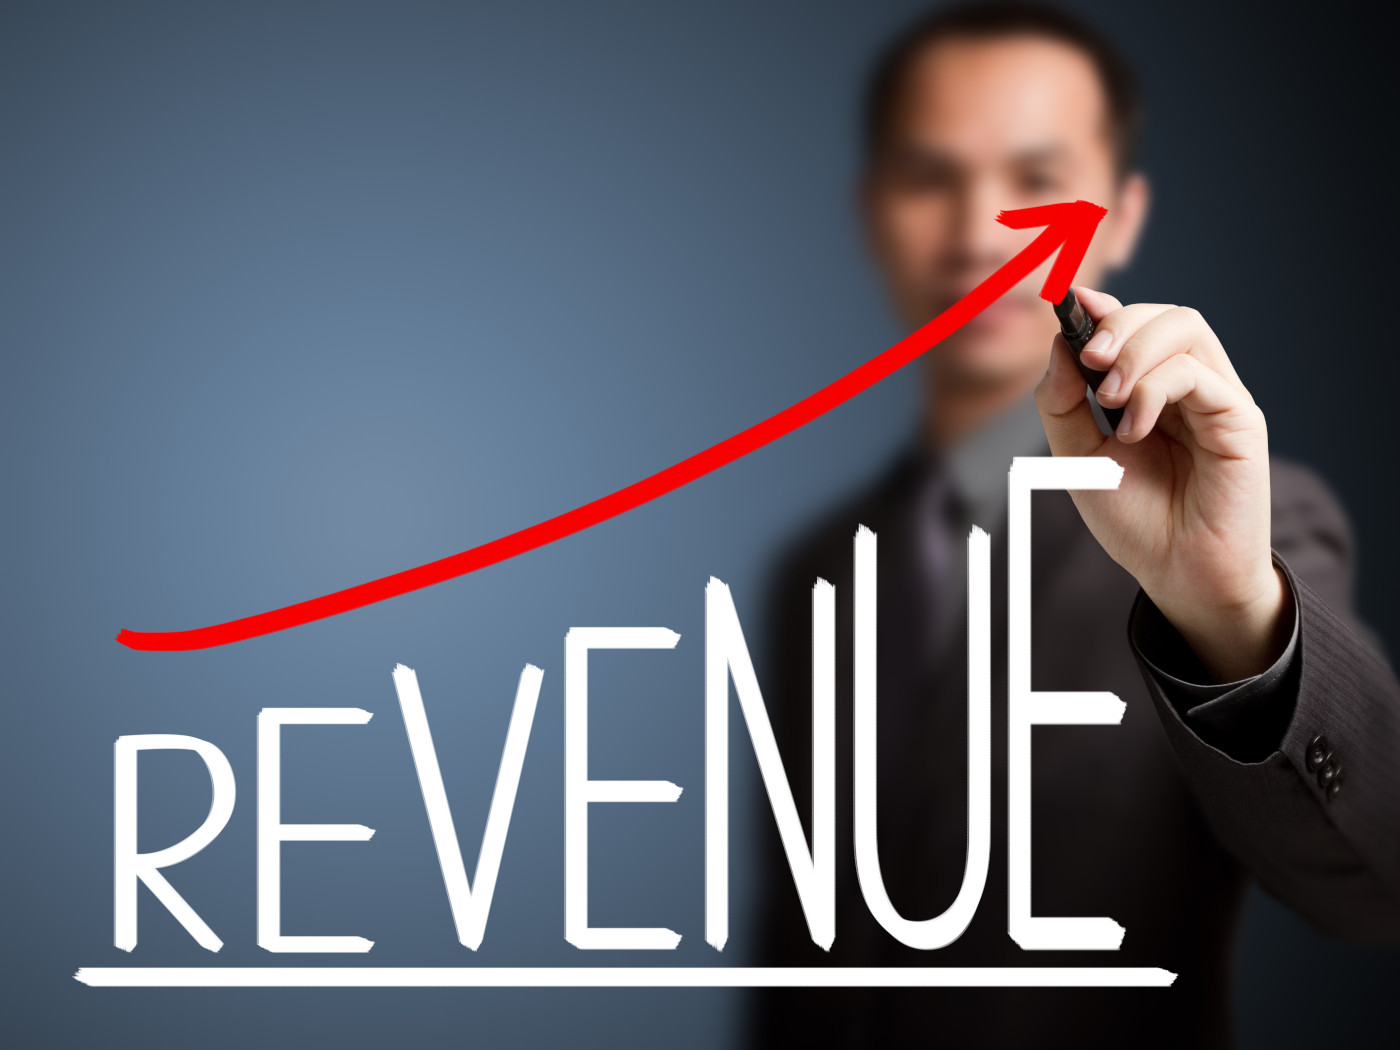 revenue growth management